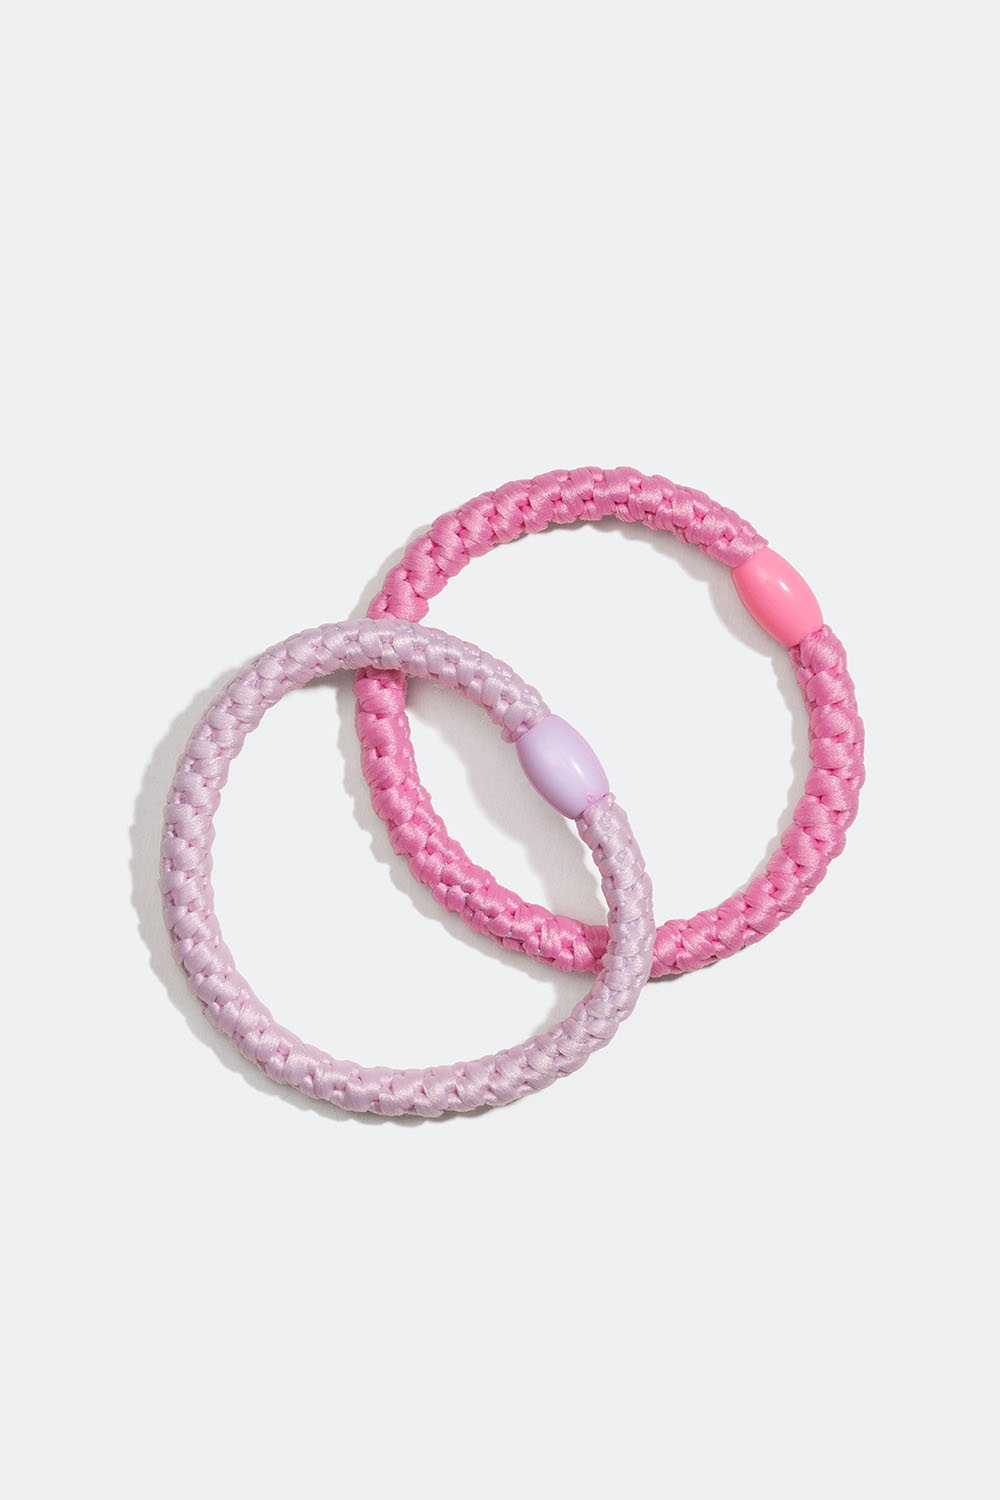 Små flätade hårsnoddar i rosa, 2-pack i gruppen Barn / Barnhåraccessoarer / Barnhårsnoddar hos Glitter (403000065400)